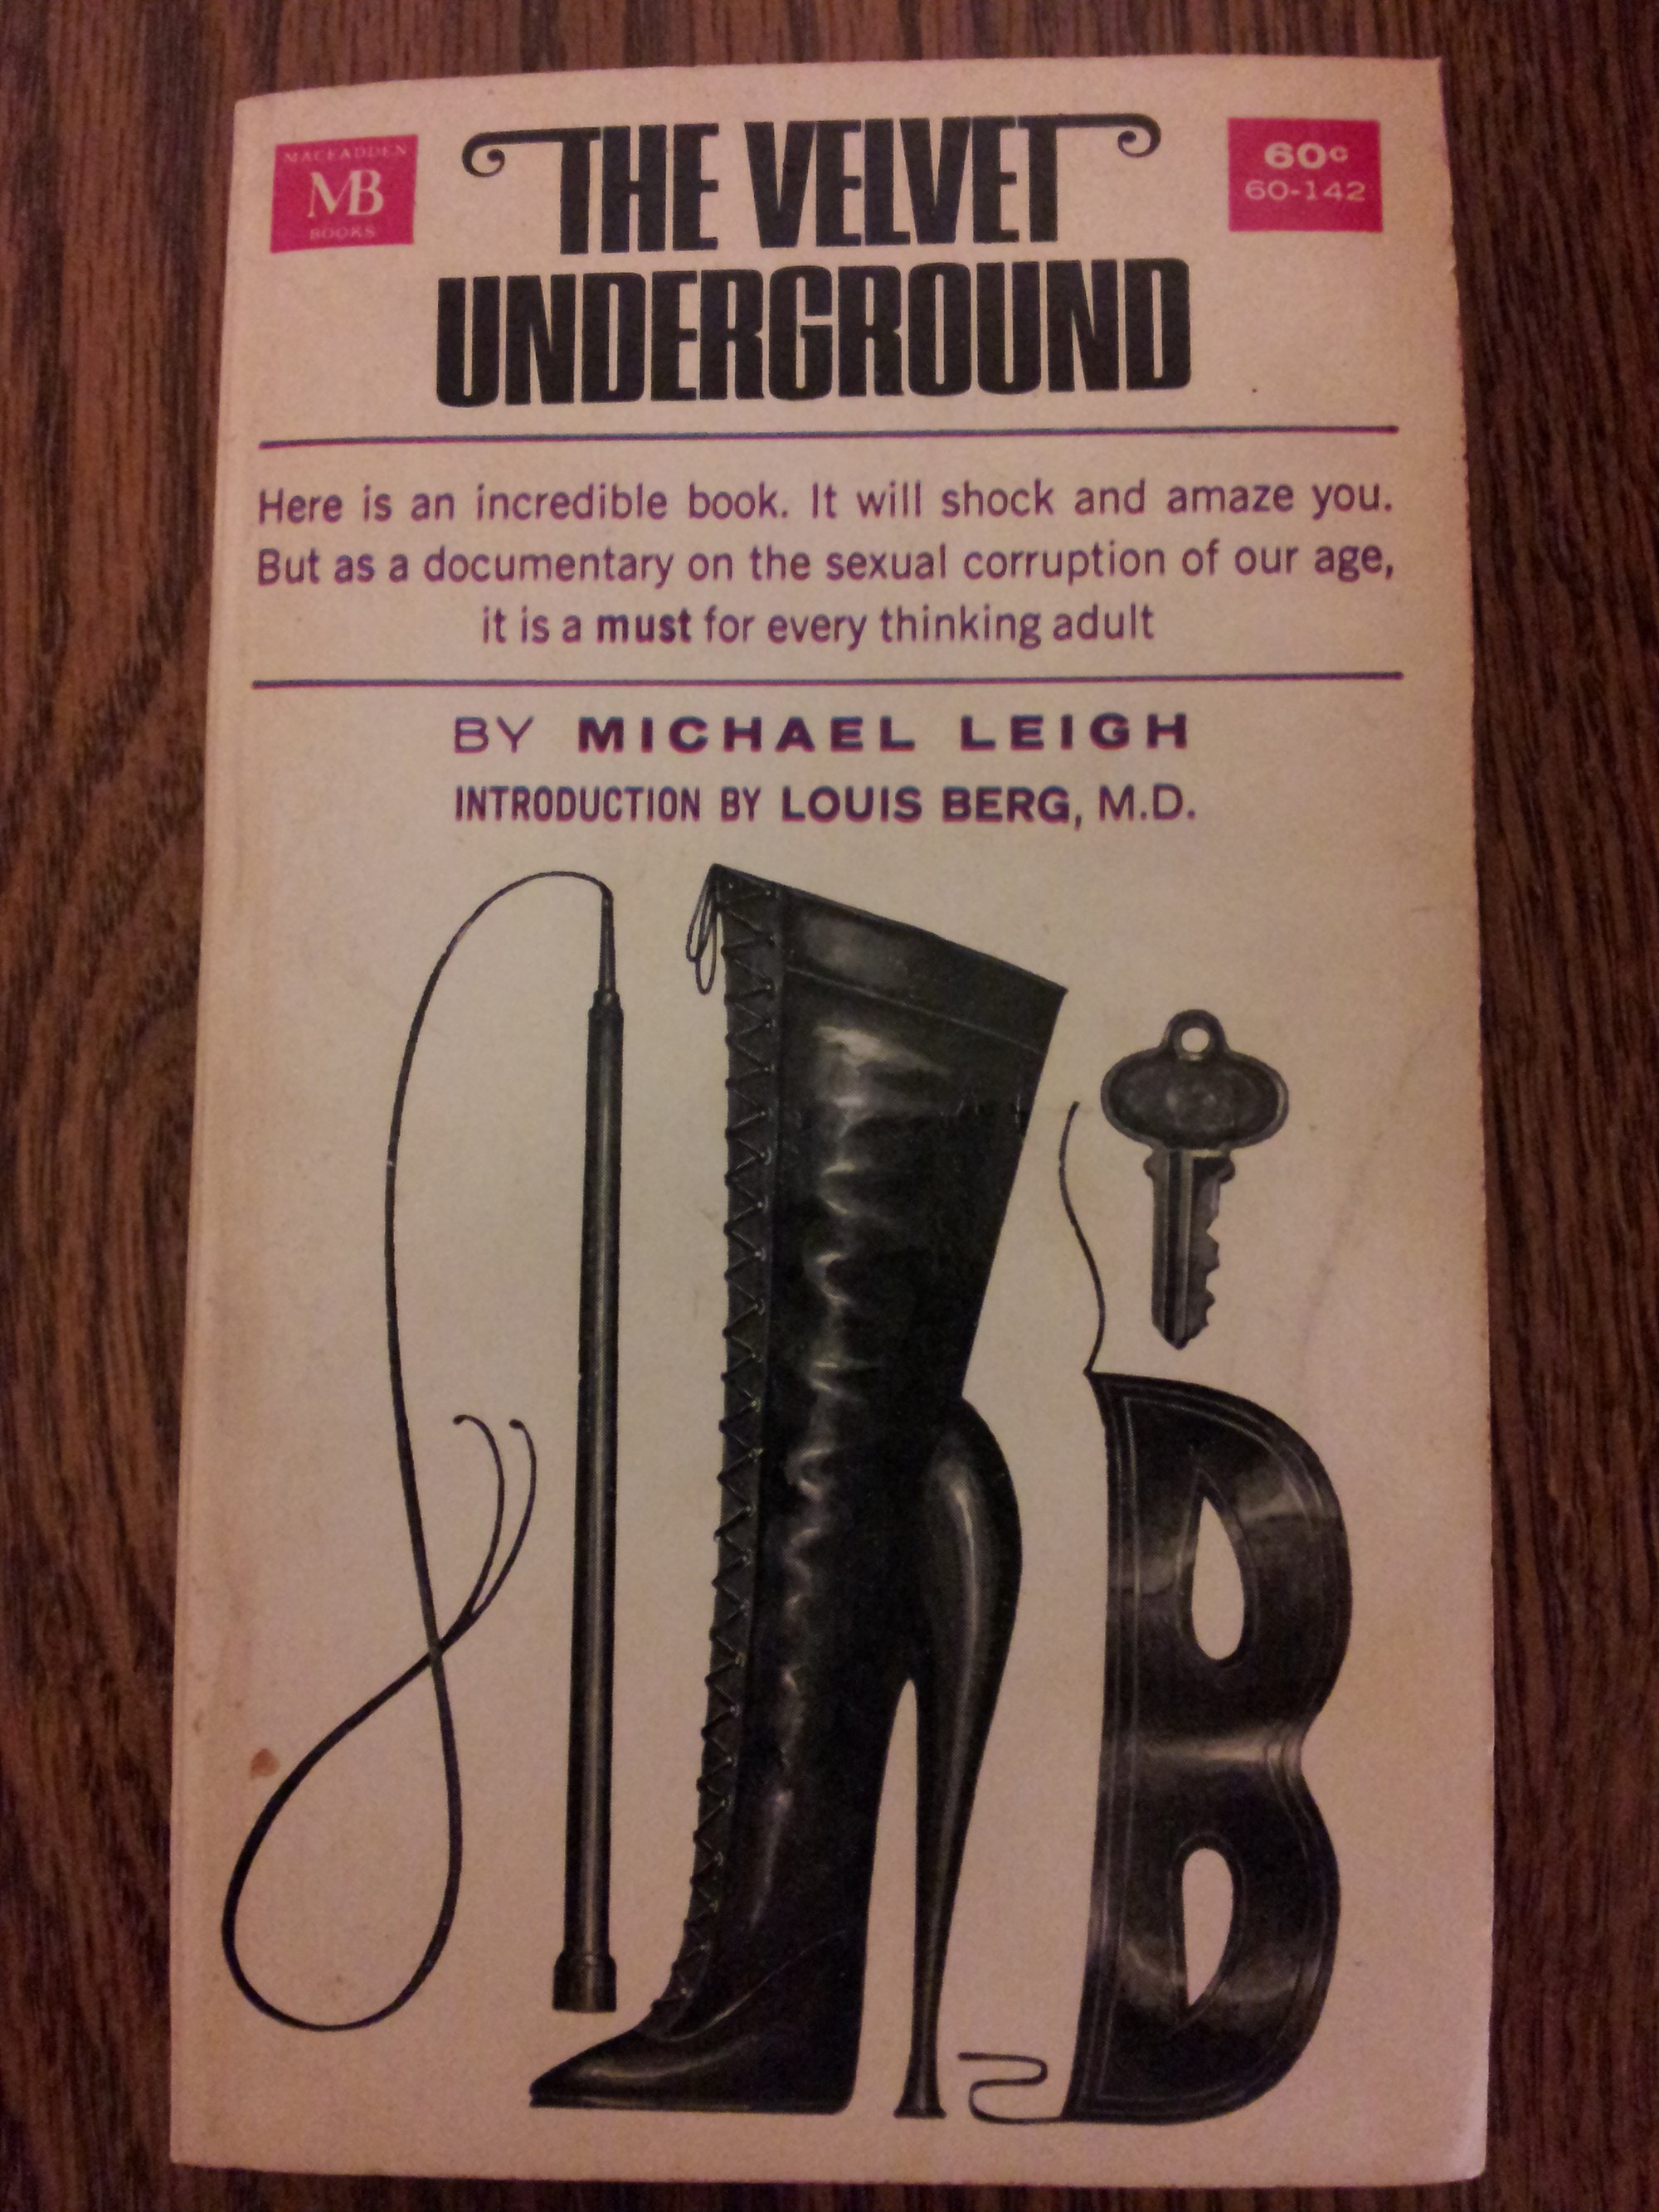 Tony Conrad terá dado a conhecer um livro chamado The Velvet Underground a Cale e Lou Reed; tratava-se de um livro de bolso do jornalista Michael Leigh, publicado em Setembro, 1963, que documenta a parafilia nos EUA.